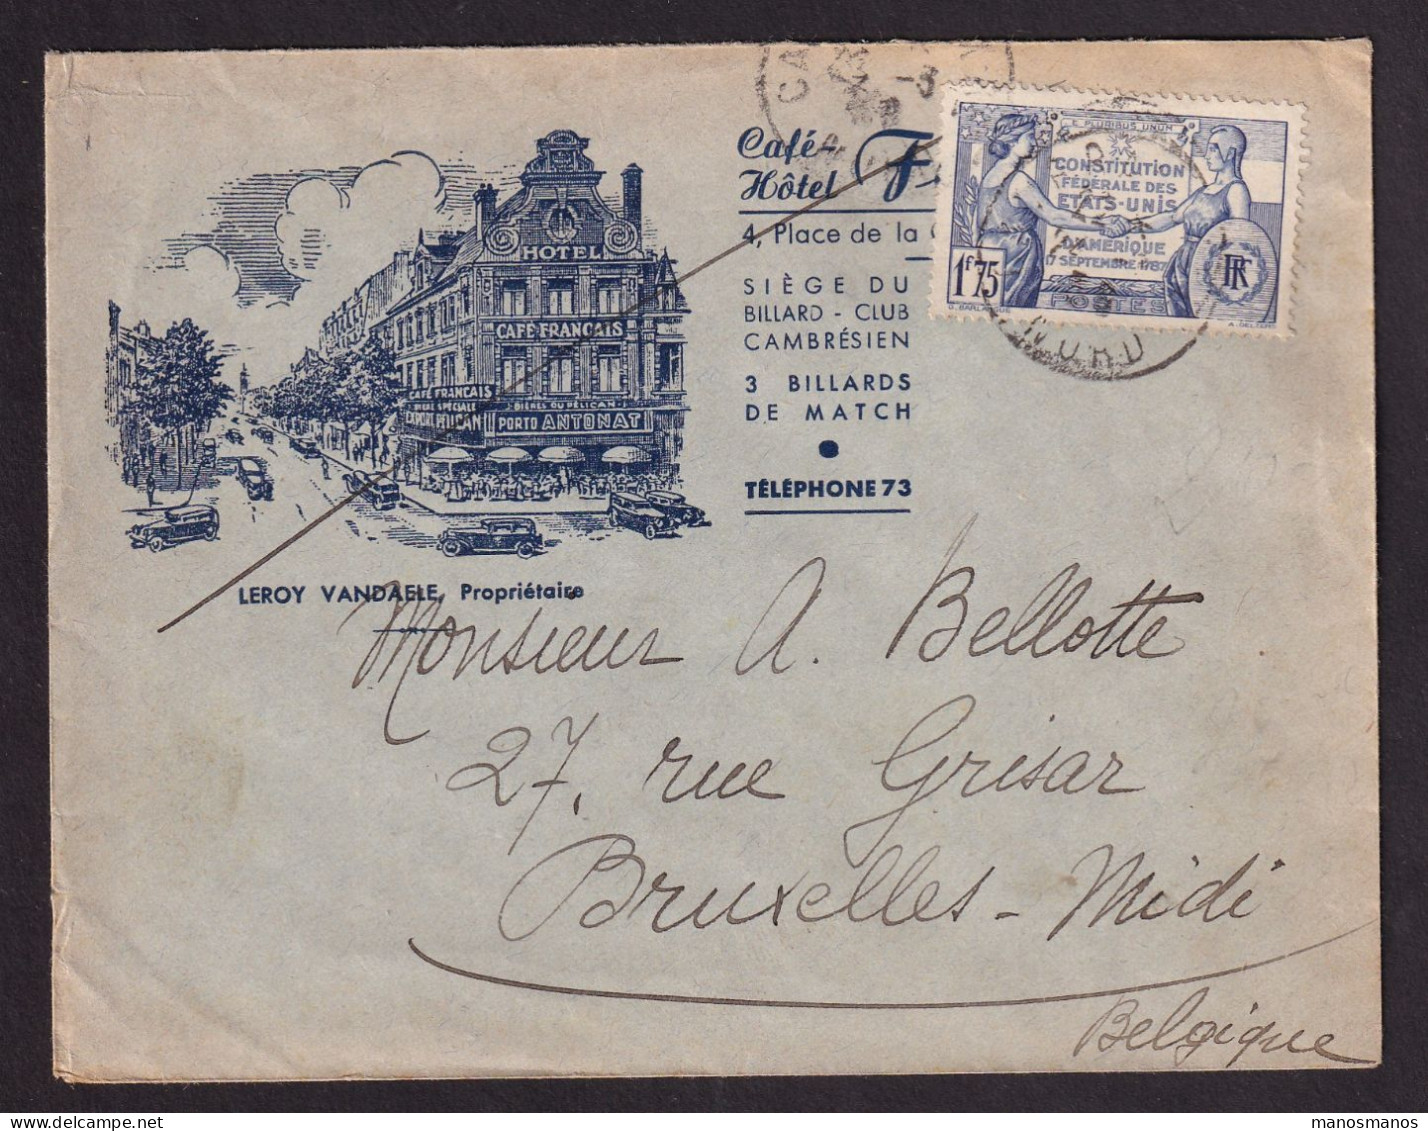 DDGG 039 - Enveloppe Illustrée "Hotel Français" TP 357 CAMBRAY 1938 Vers Bruxelles - Covers & Documents